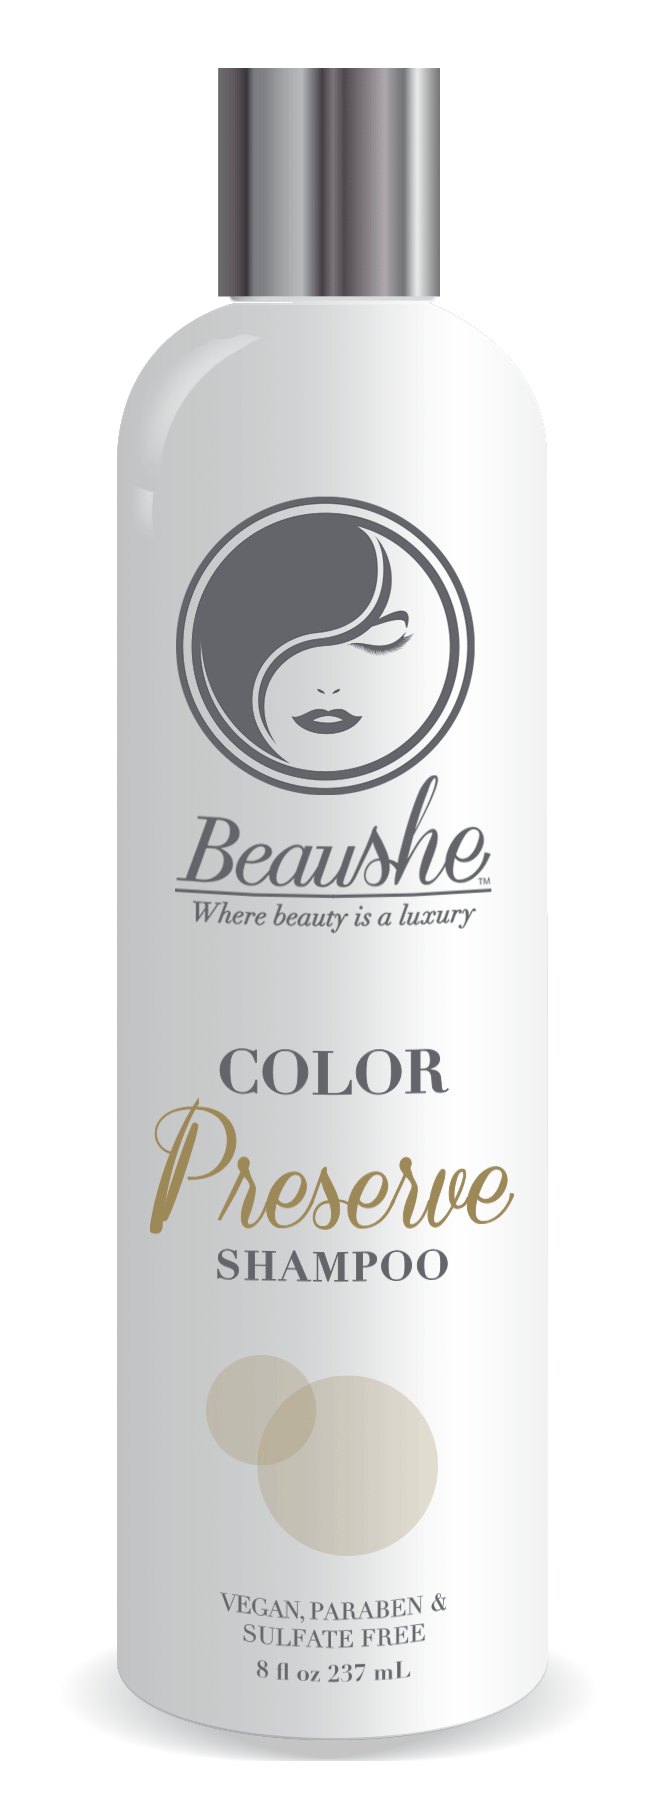 Color Preserve Shampoo 8oz